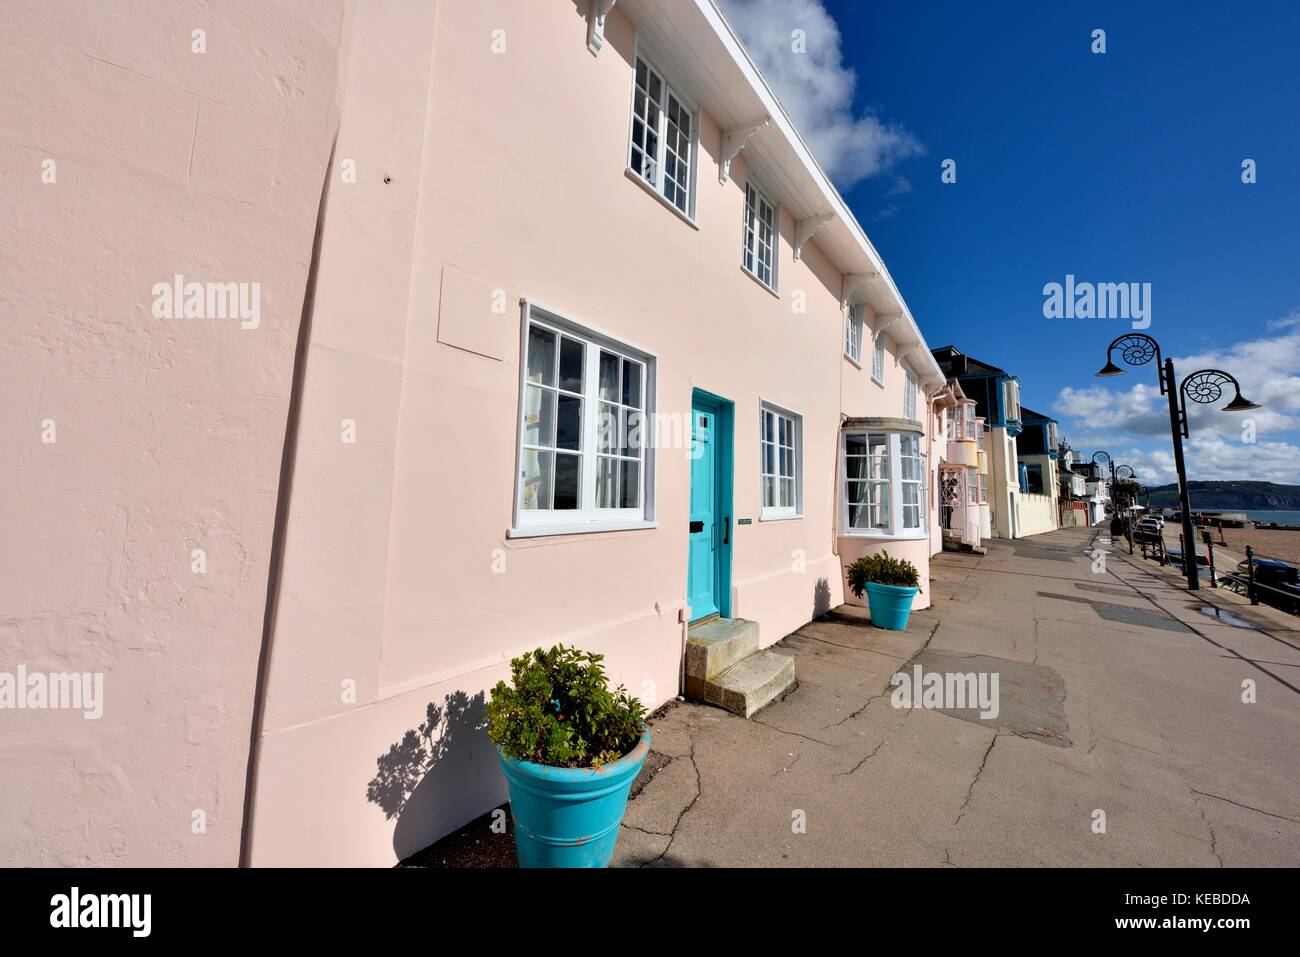 Seaside holiday cottages, Lyme Regis Dorset England UK Banque D'Images